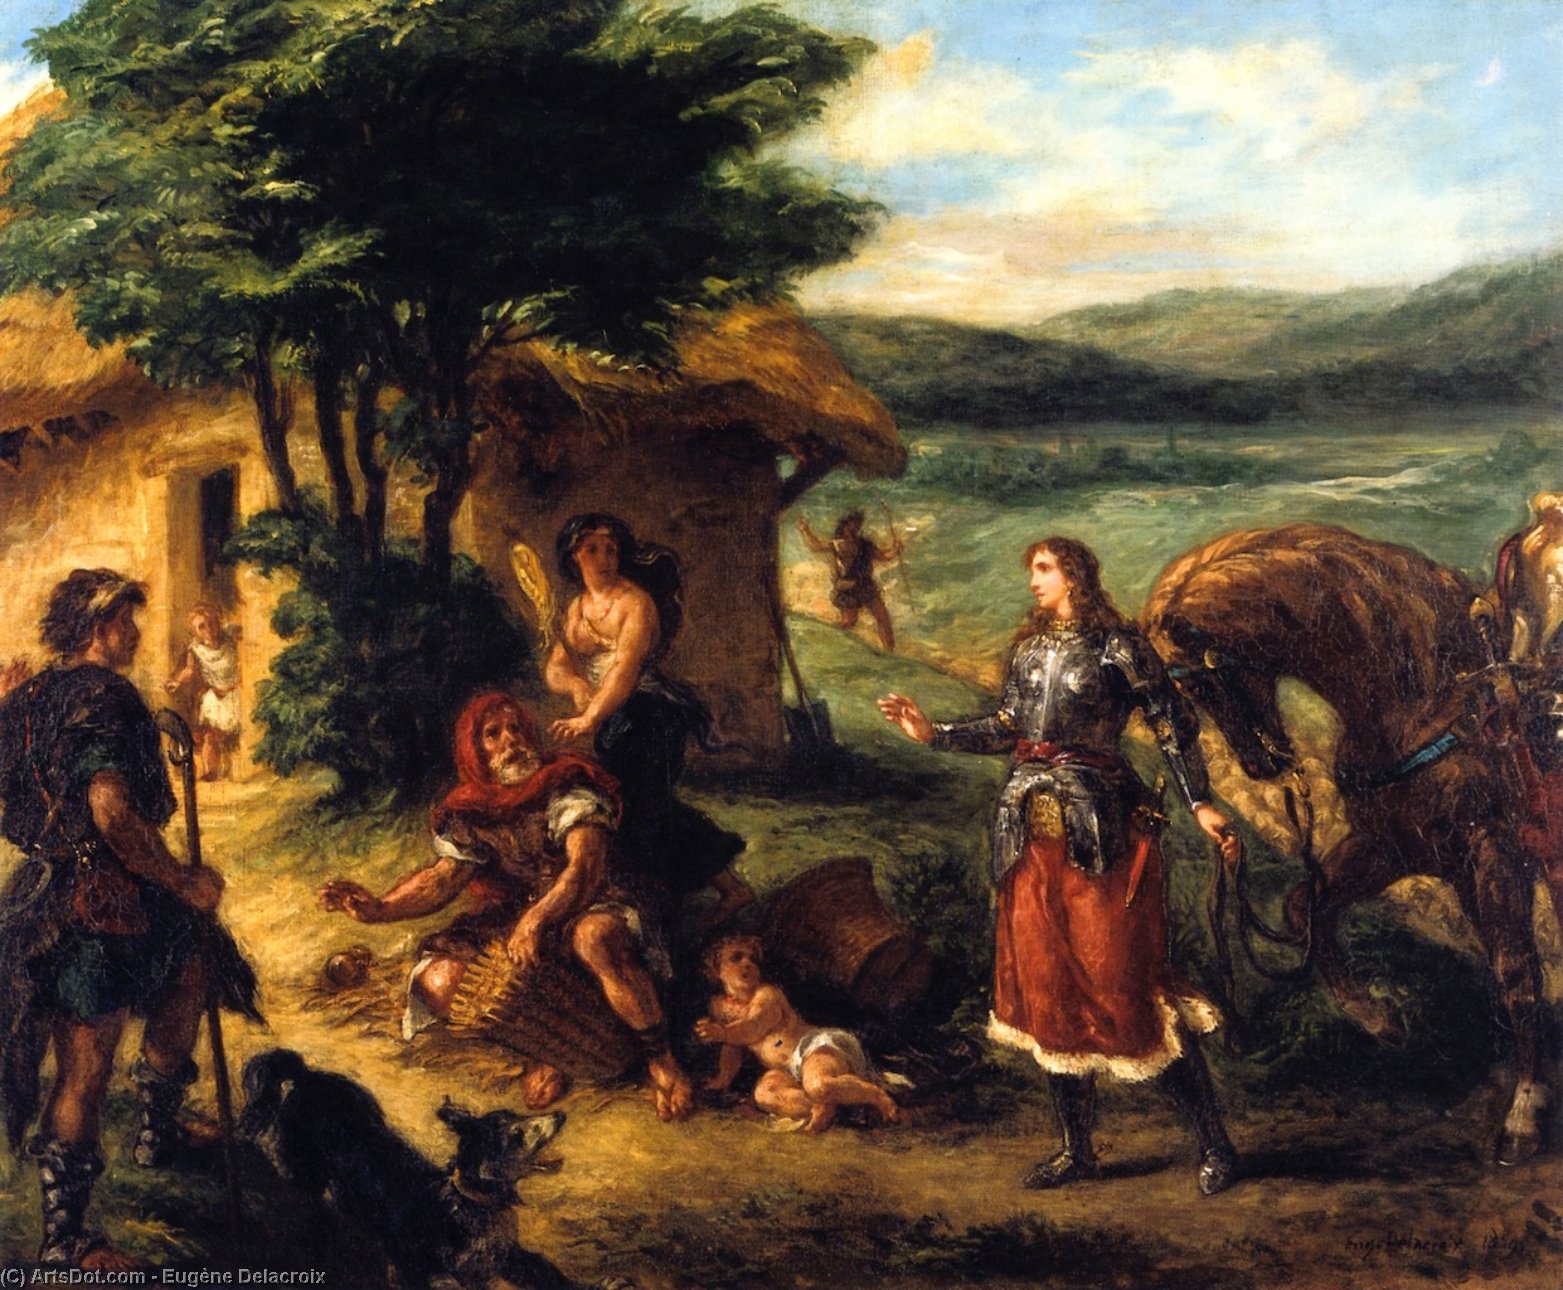 WikiOO.org - אנציקלופדיה לאמנויות יפות - ציור, יצירות אמנות Eugène Delacroix - Erminia and the Shepherds